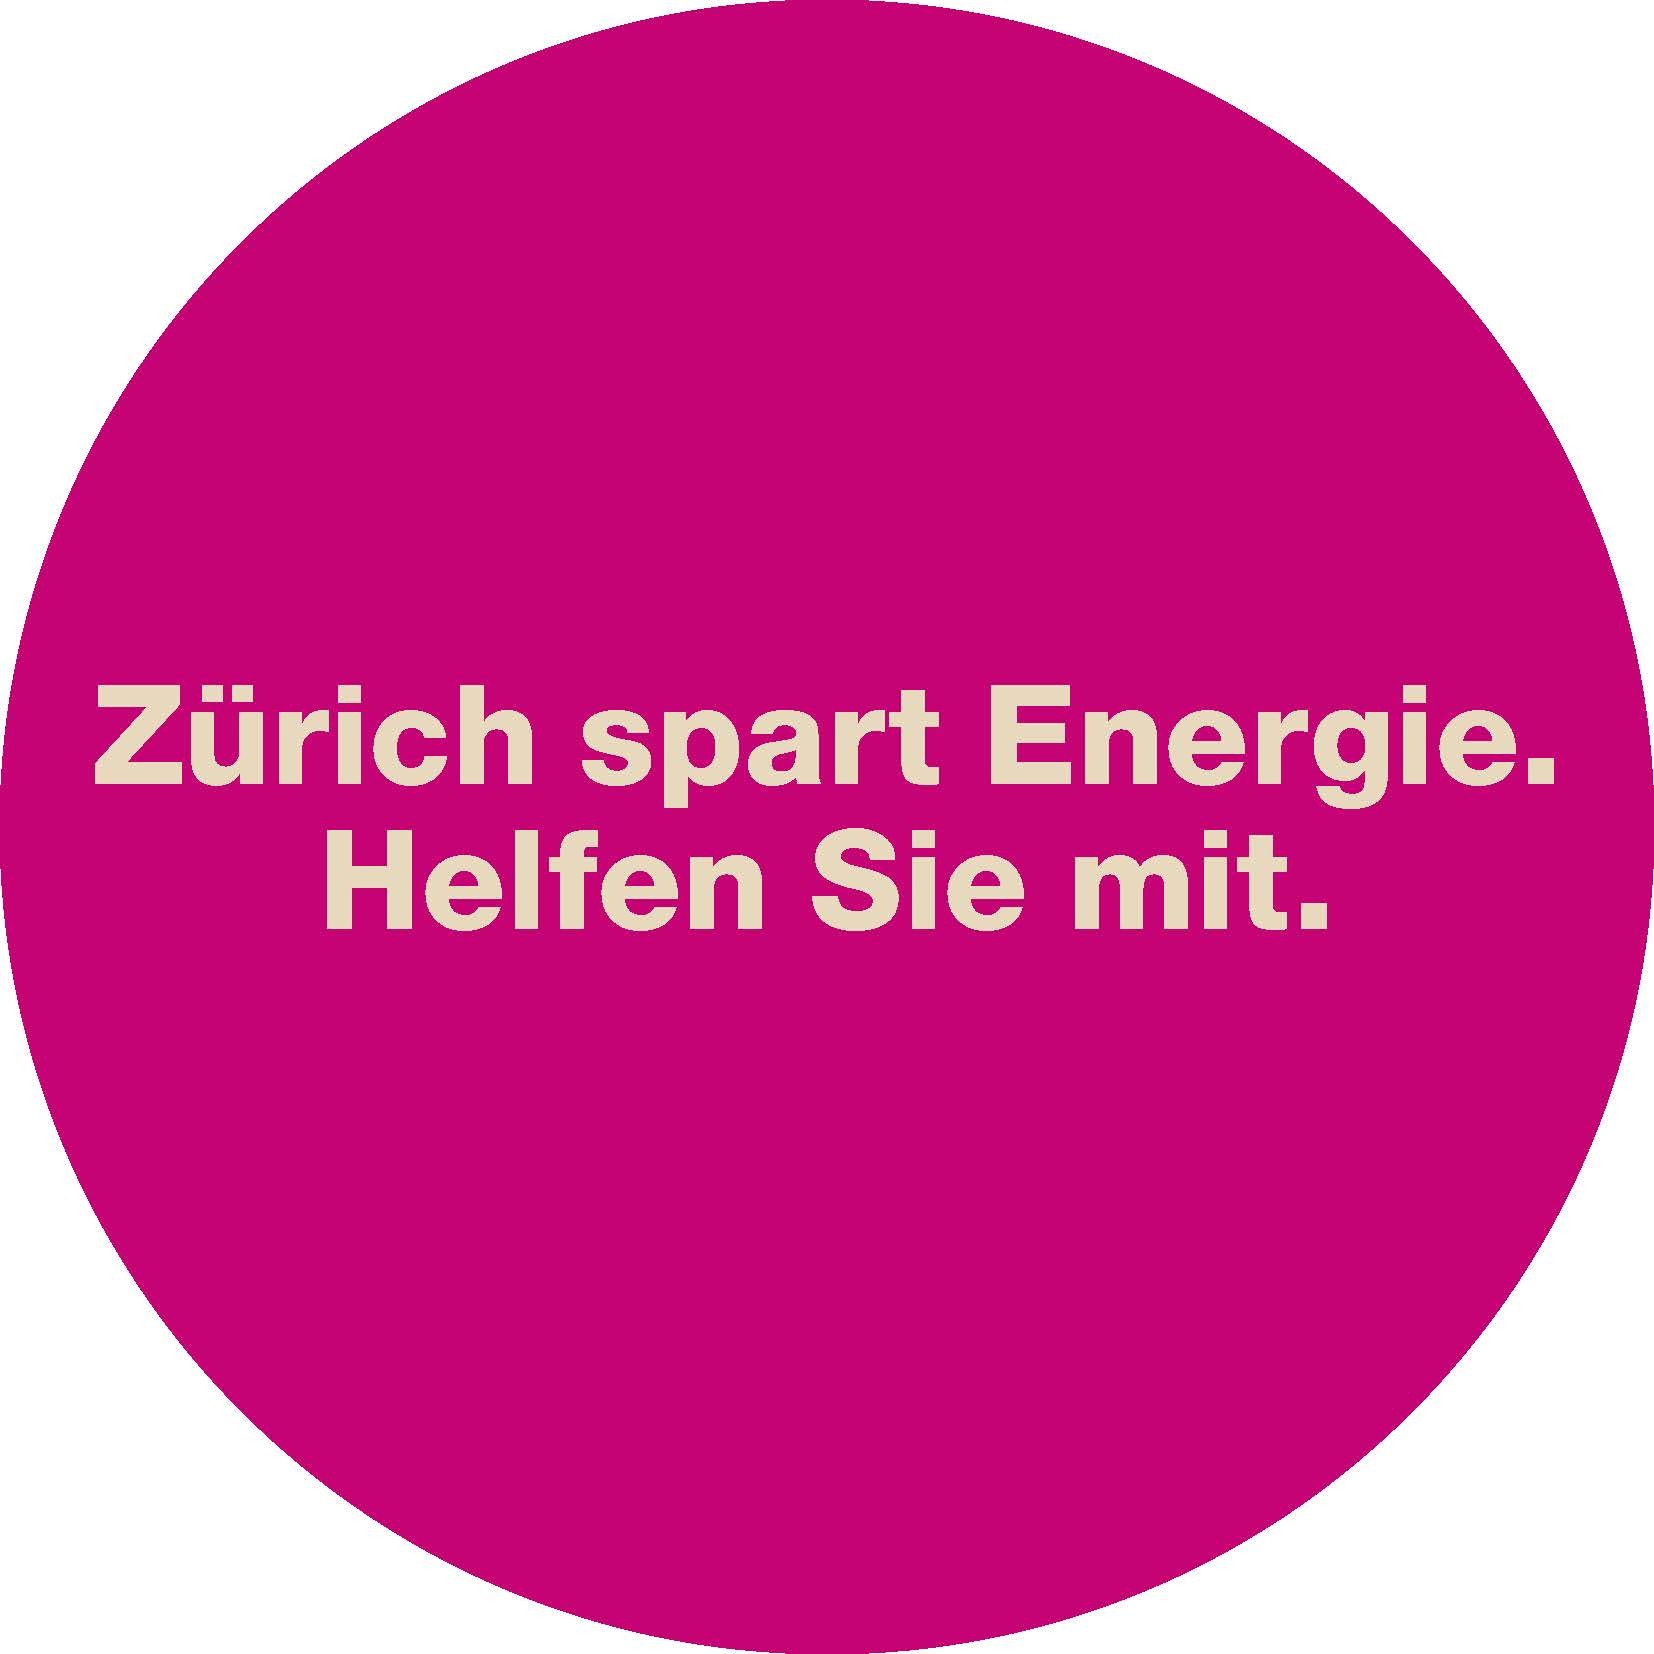 Zürich spart Energie. Helfen Sie mit. 